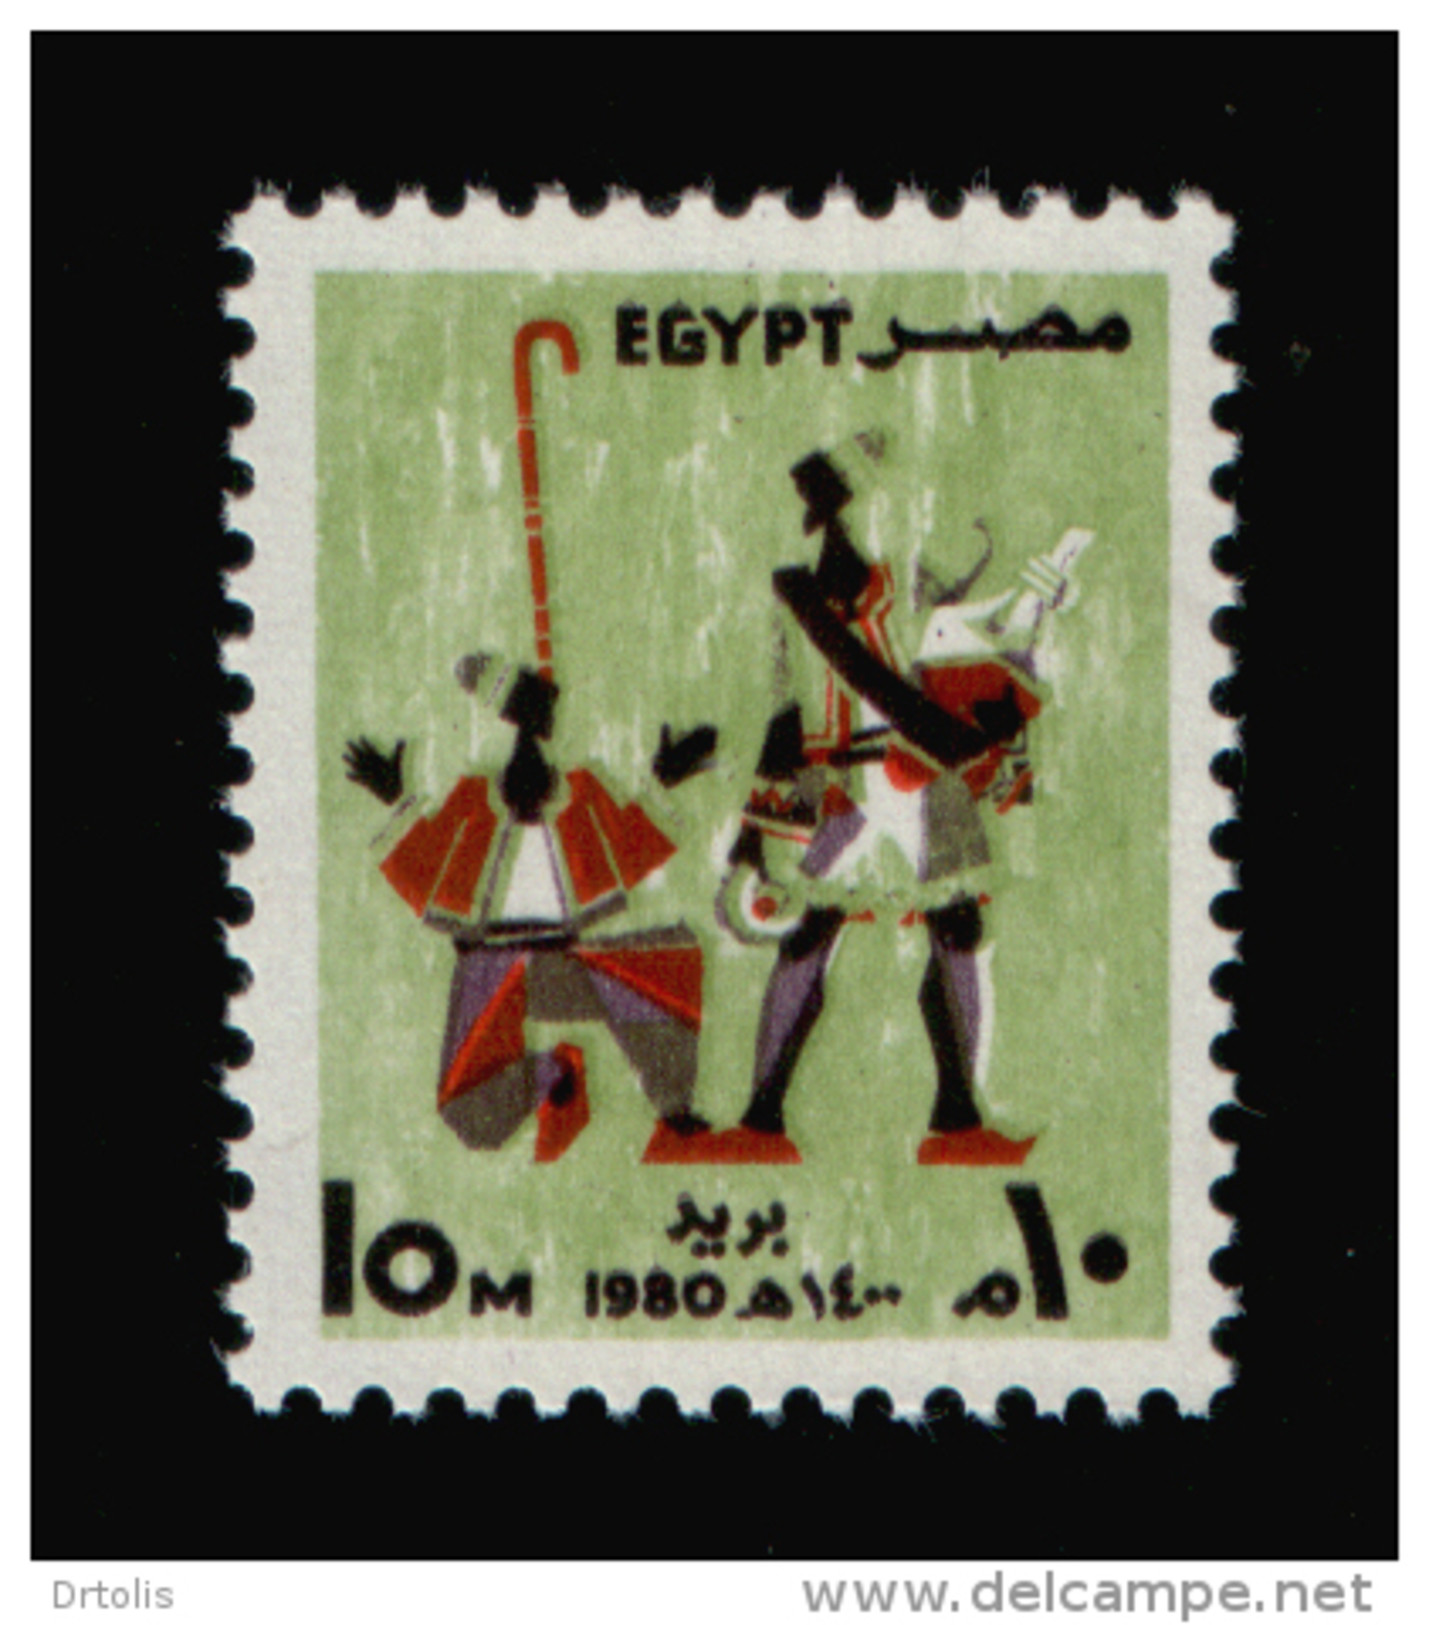 EGYPT / 1980 / FESTIVALS / ERKSOUS ( LICORICE ) SELLER / NAKRAZAN PLAYER / MNH / VF - Nuevos